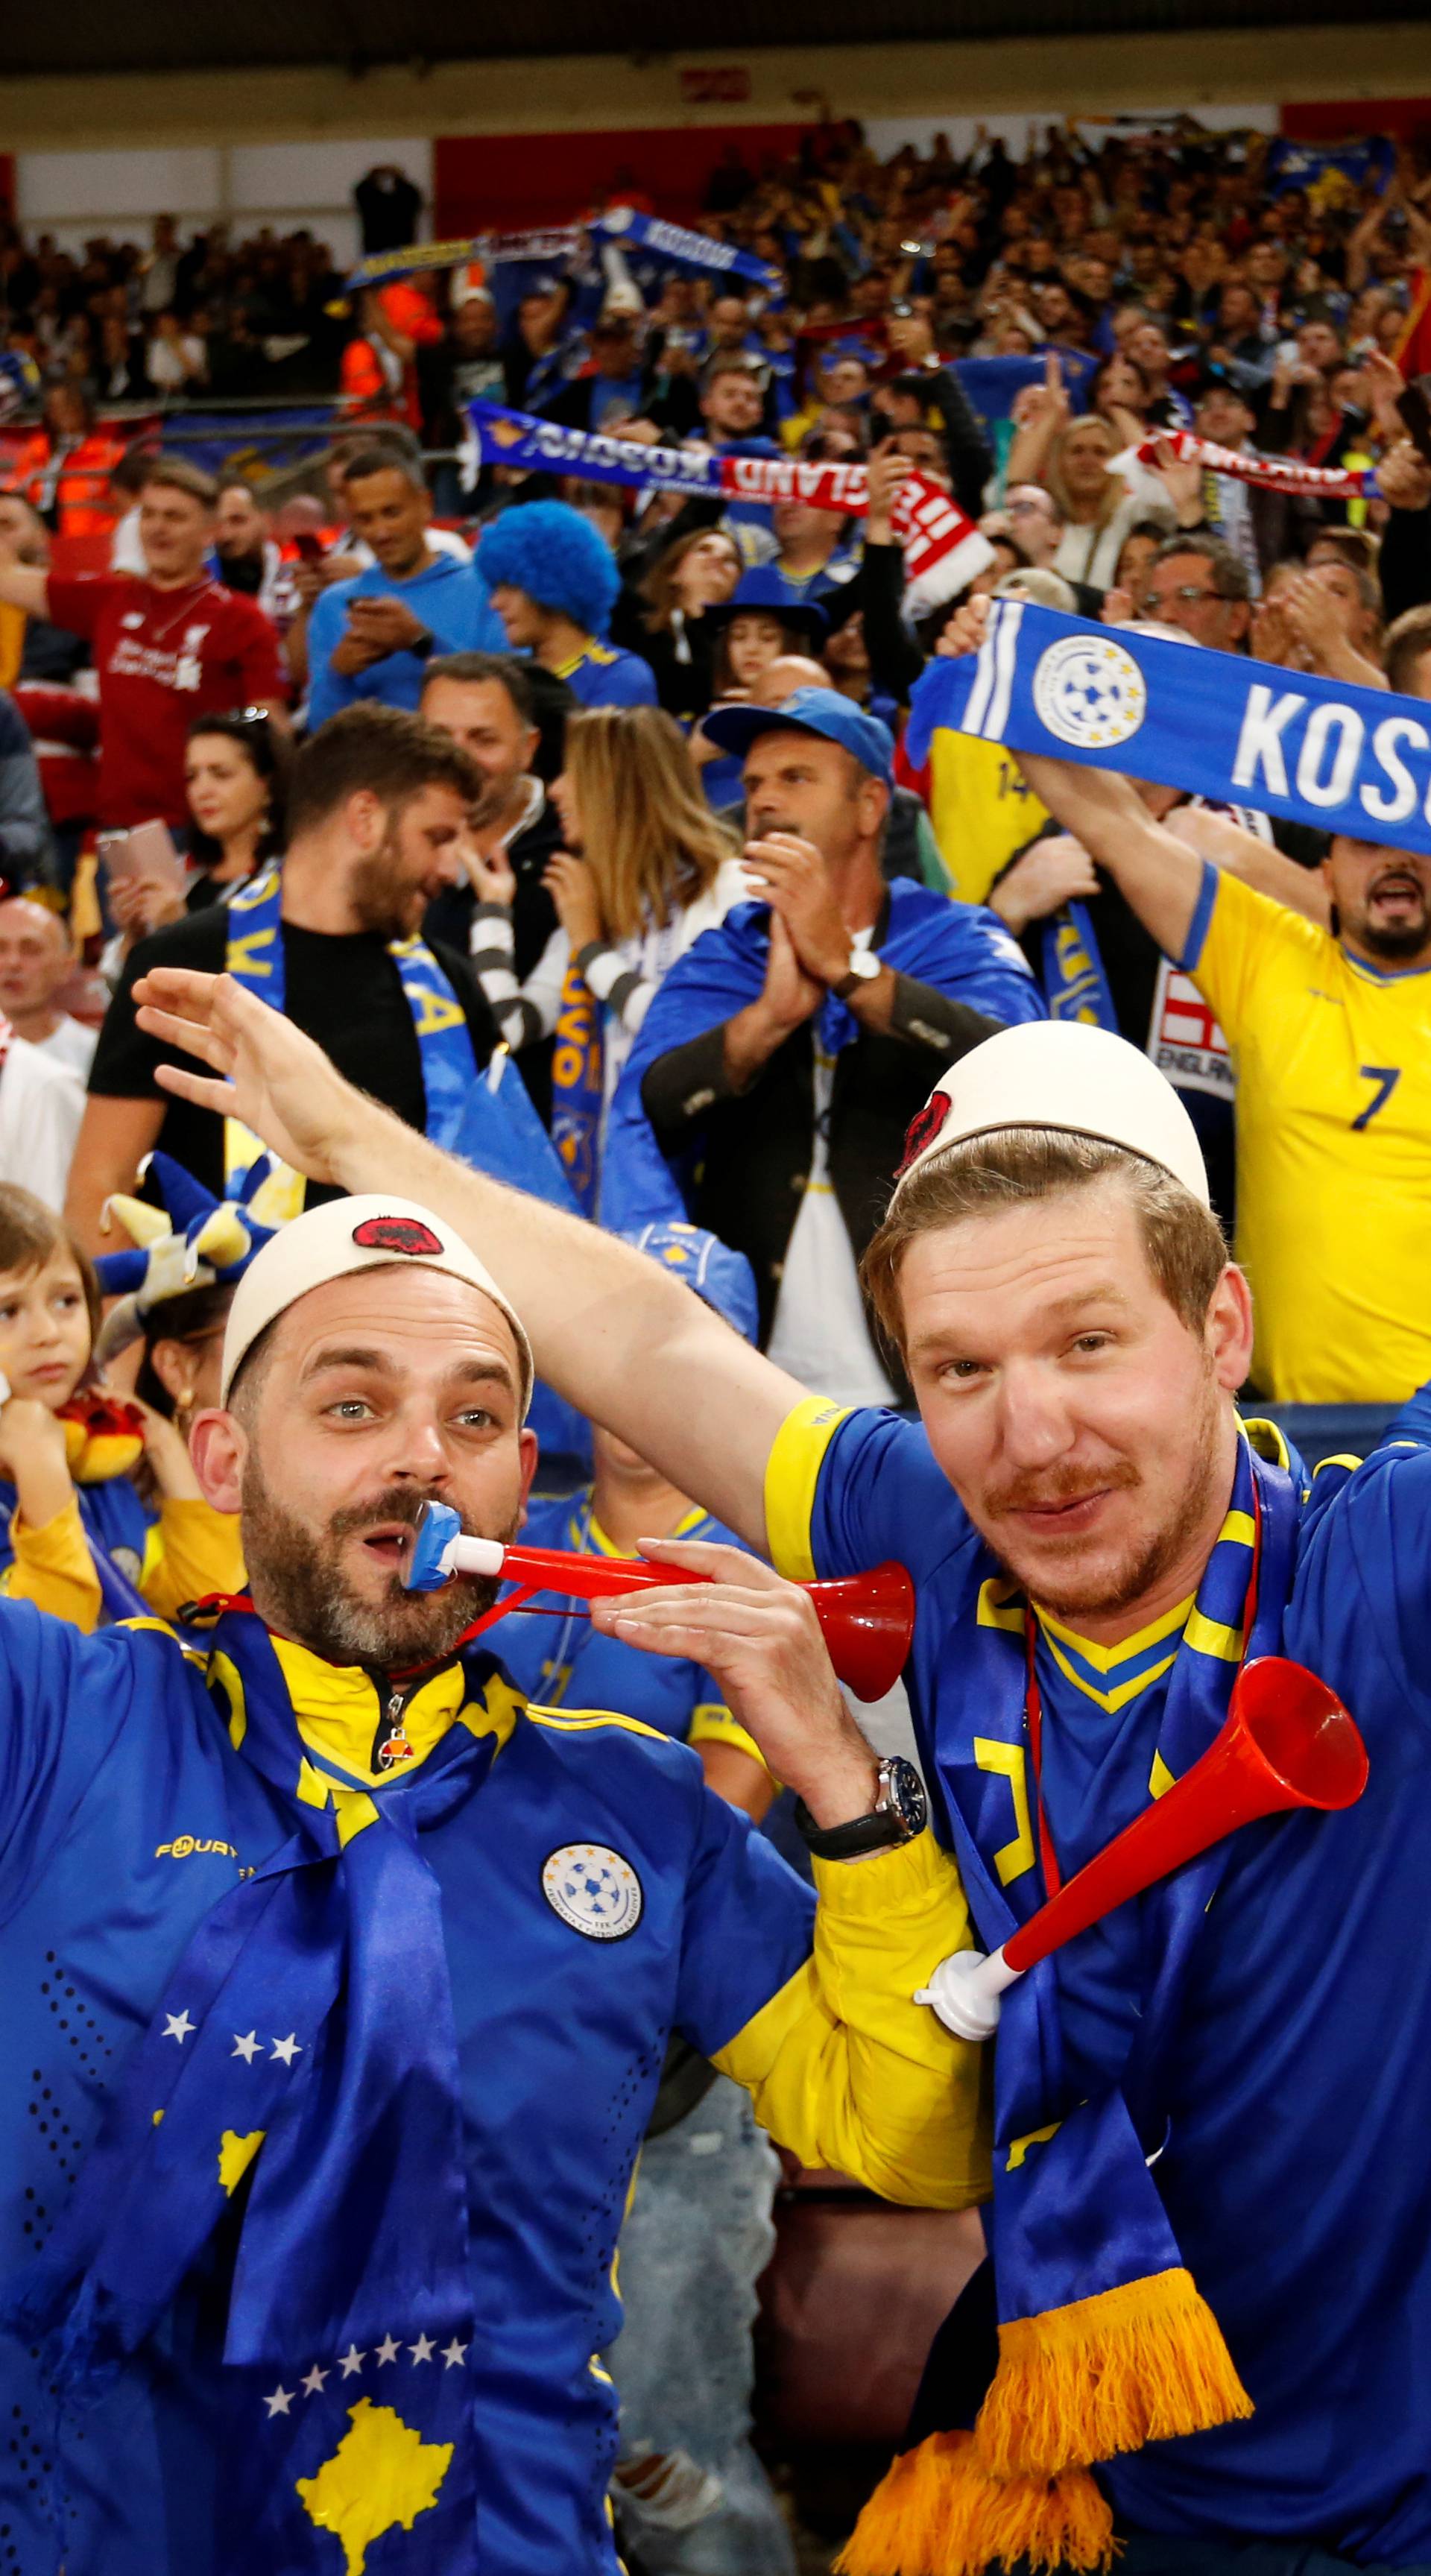 Sada svi žele igrati za Kosovo! Stižu im iz Basela i Wolfsburga